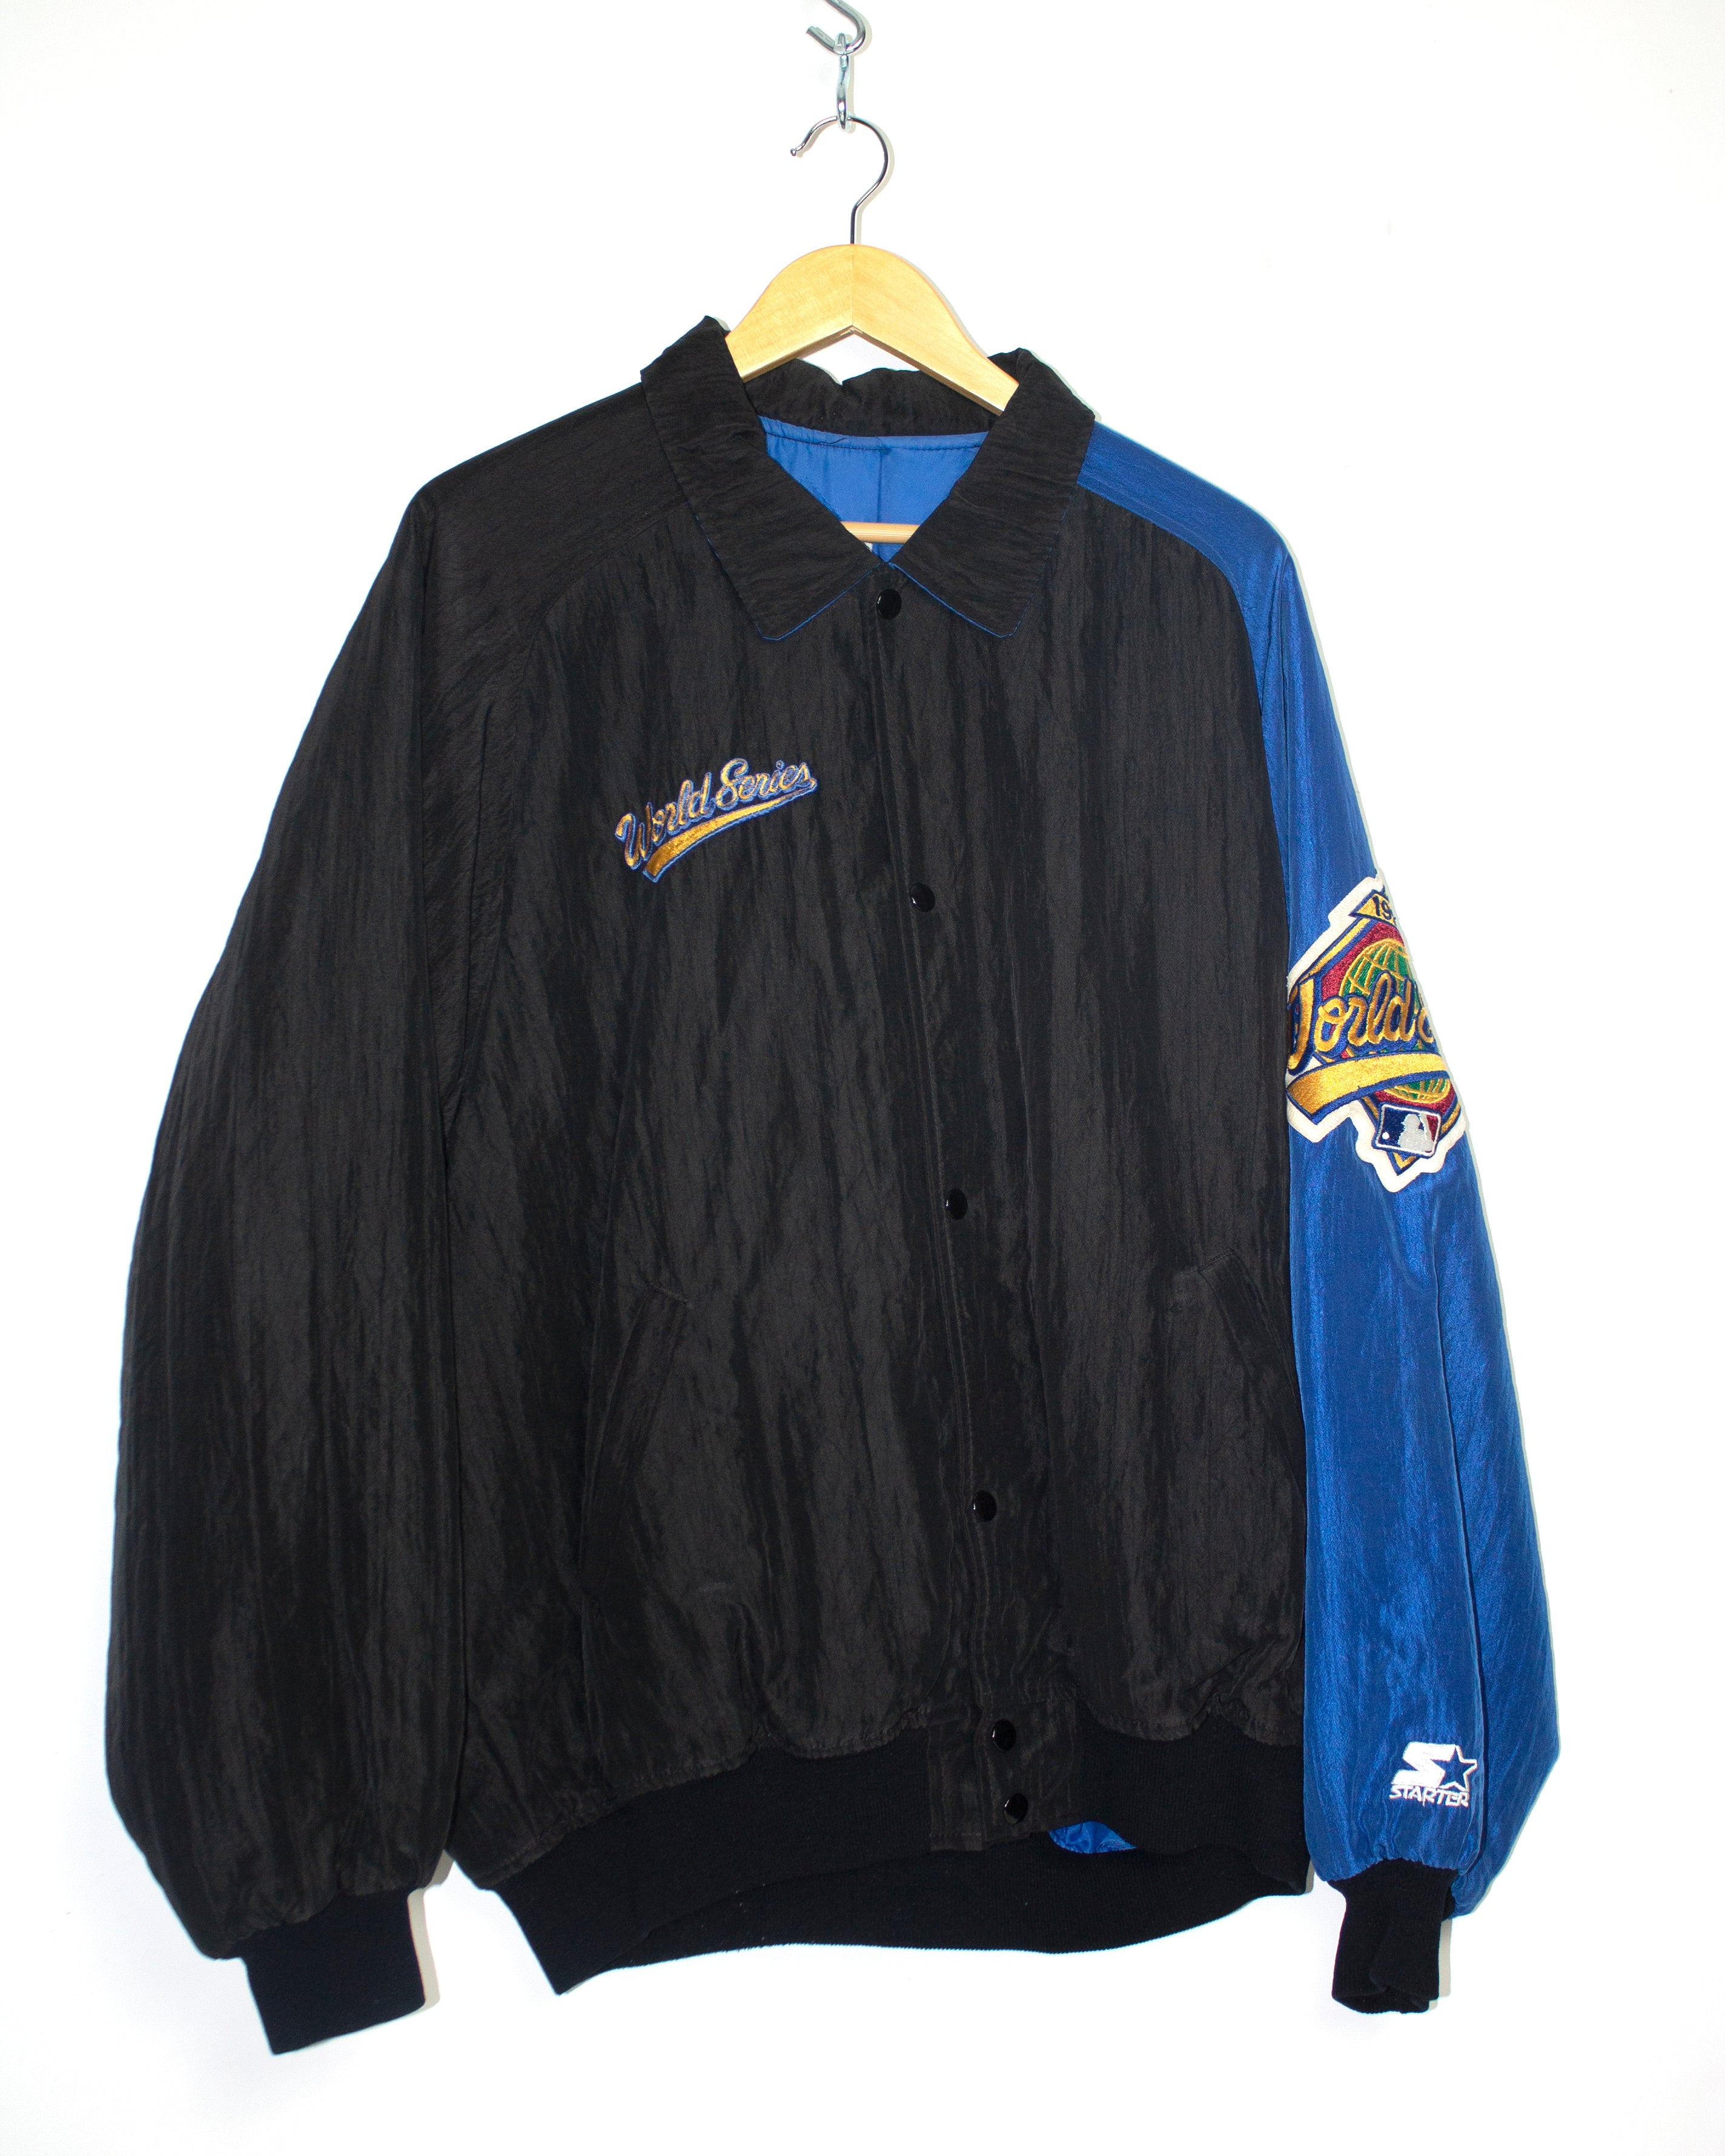 Vintage 1996 World Series Starter Jacket Sz XL